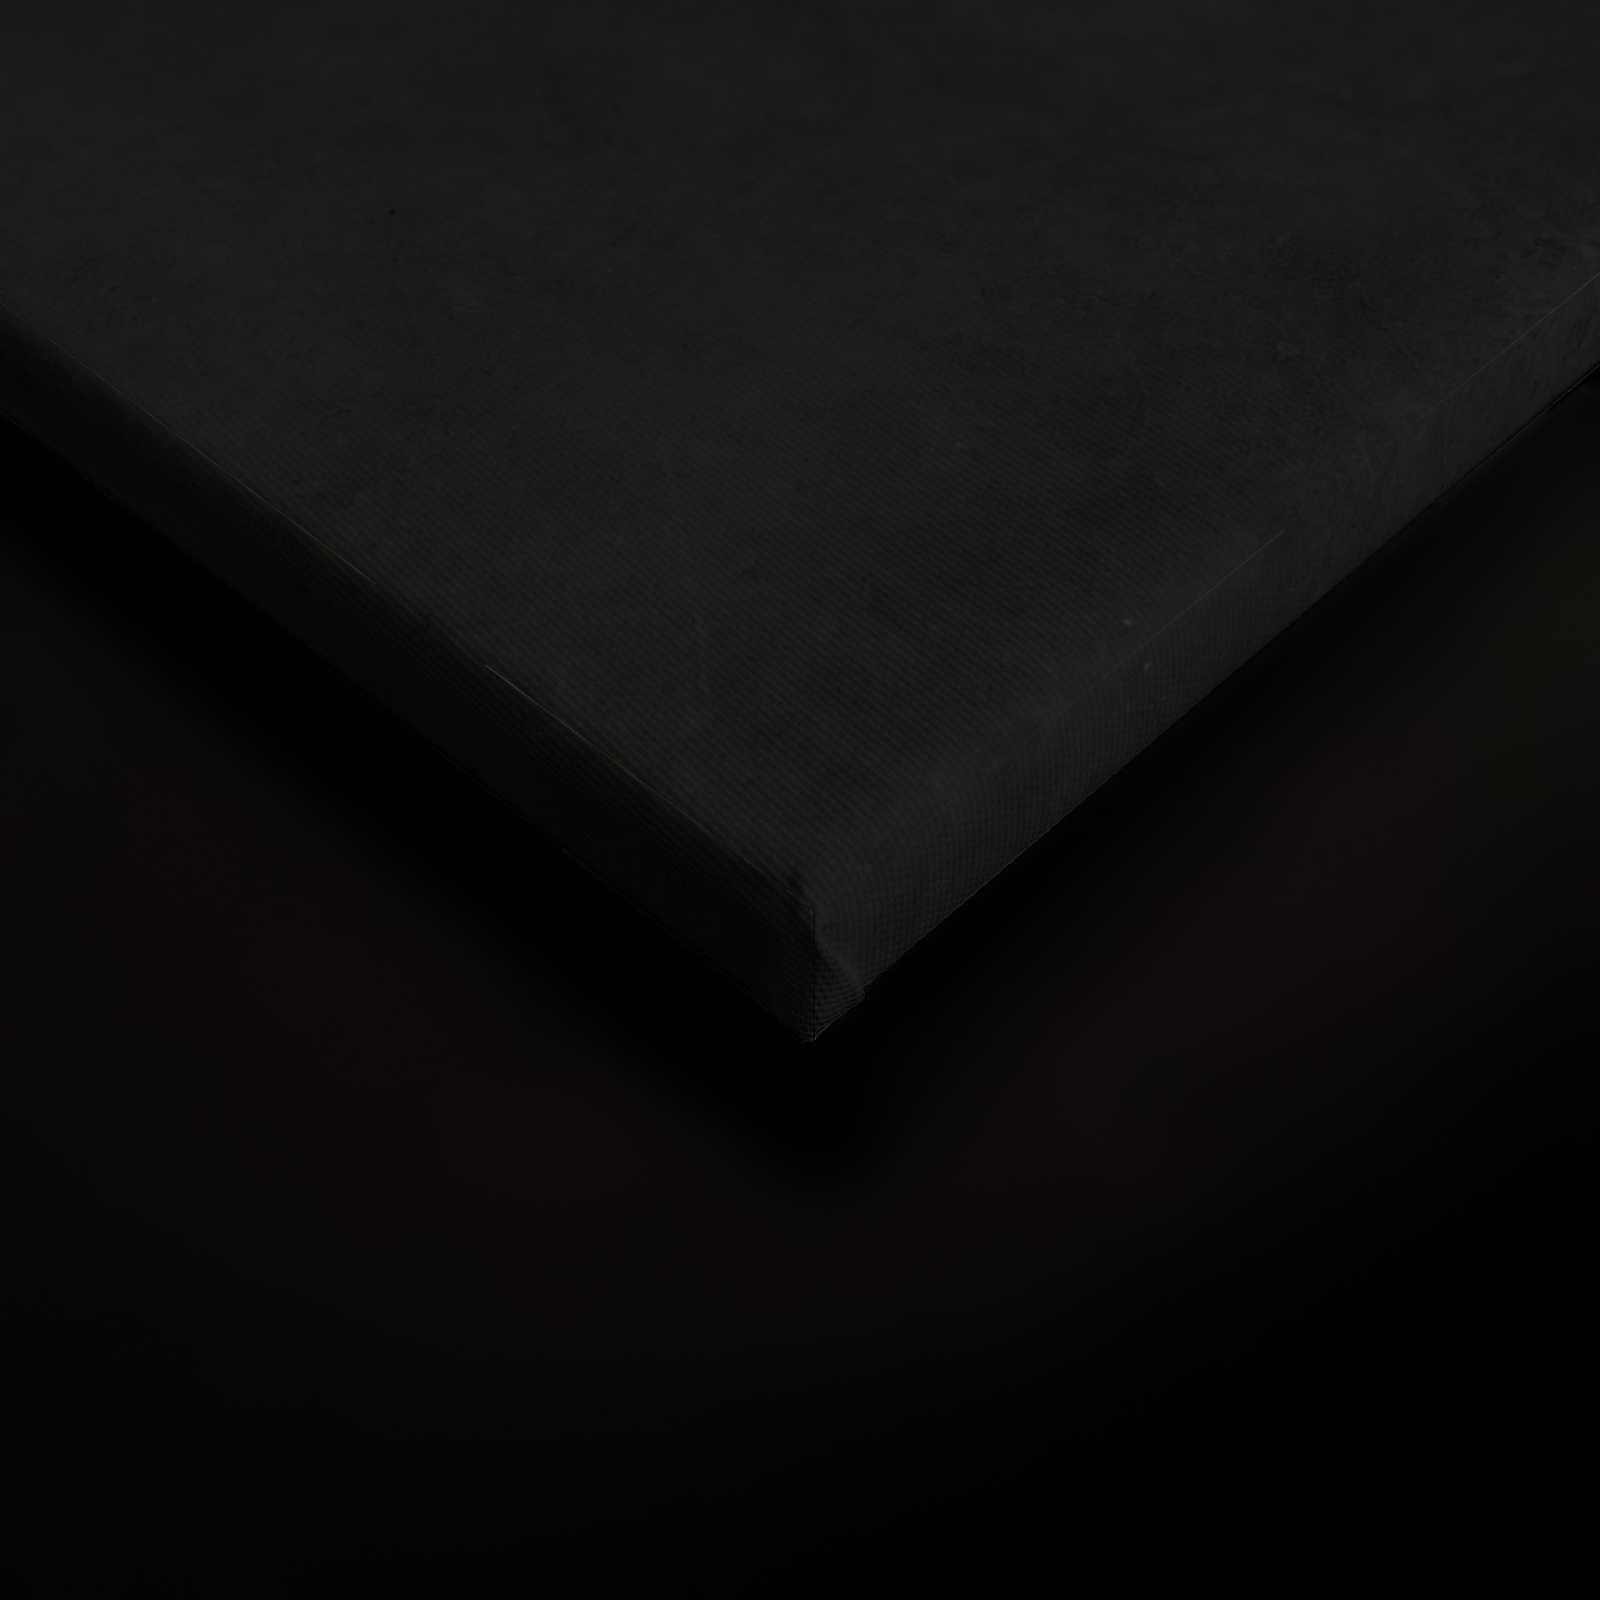             Giardino di mezzanotte 2 - Quadro su tela nera Ramo di fiori bianchi - 0,80 m x 1,20 m
        